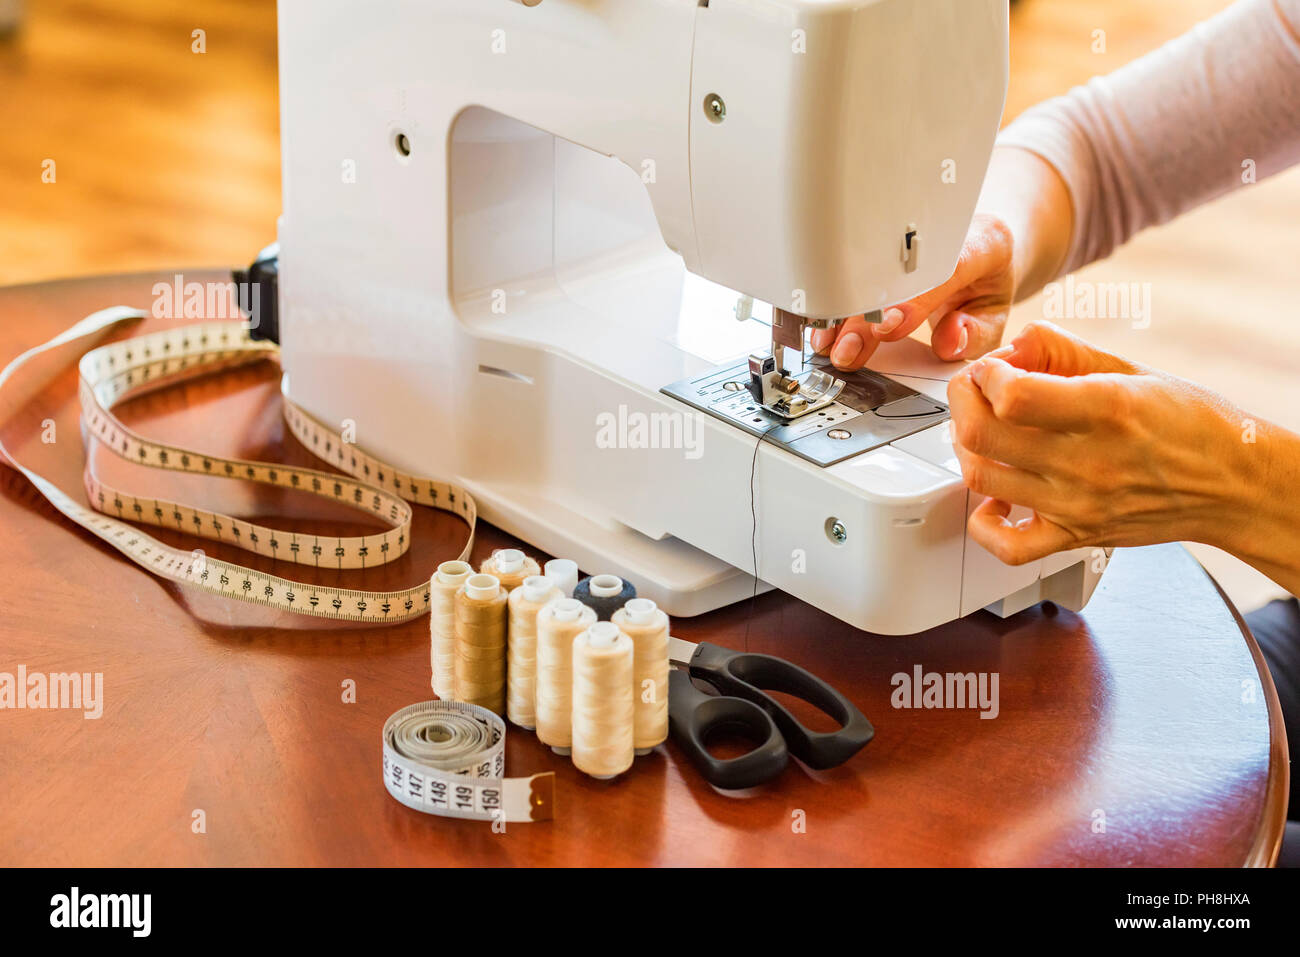 Schneiderin oder Näherin arbeitet mit Nähmaschine. Rollen, Schere, Maßband  und eine Nähmaschine. Arbeitsplatz Stockfotografie - Alamy